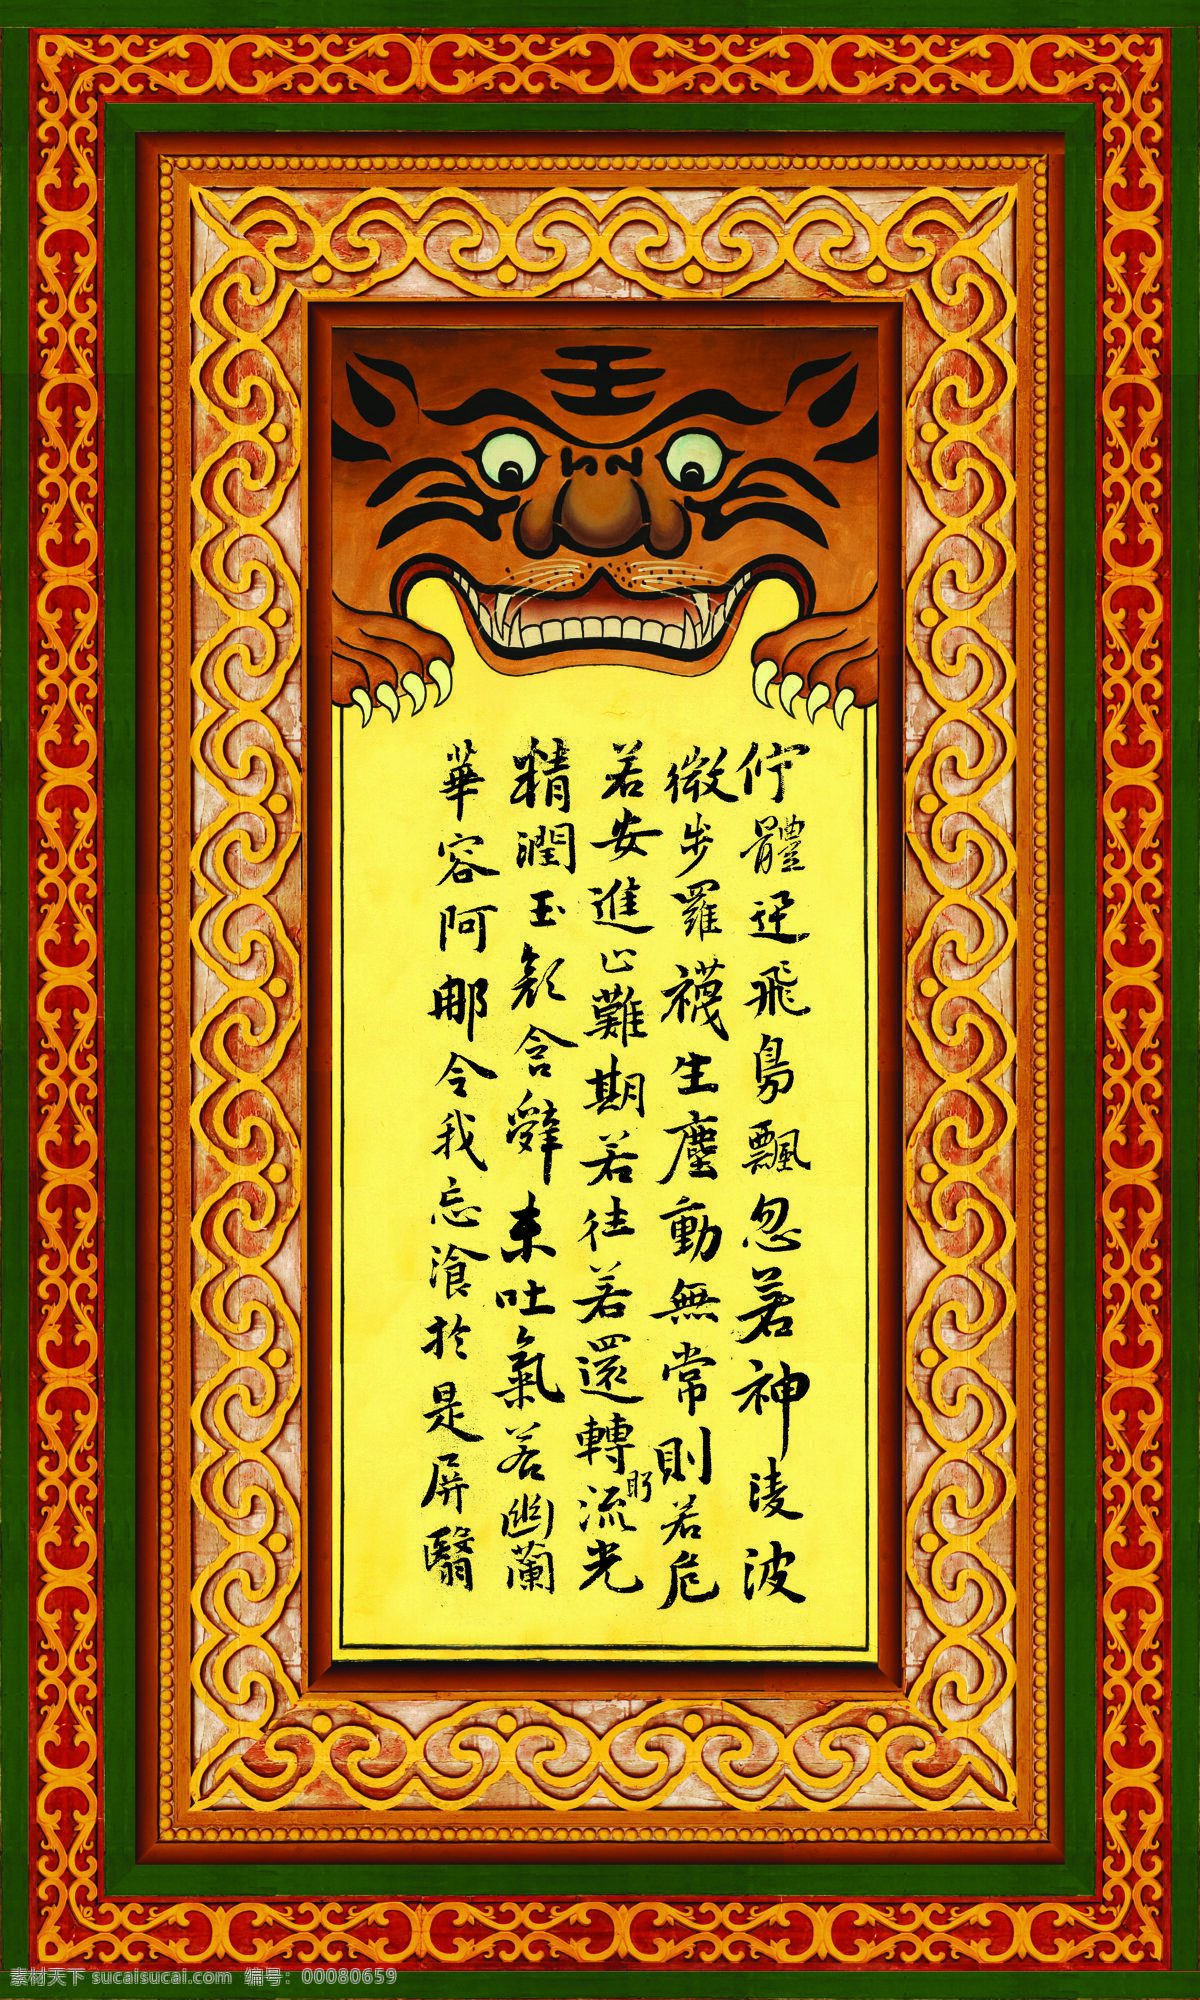 衙门 壁挂 设计素材 古装 绘画书法 清朝 文化艺术 模板下载 衙门壁挂